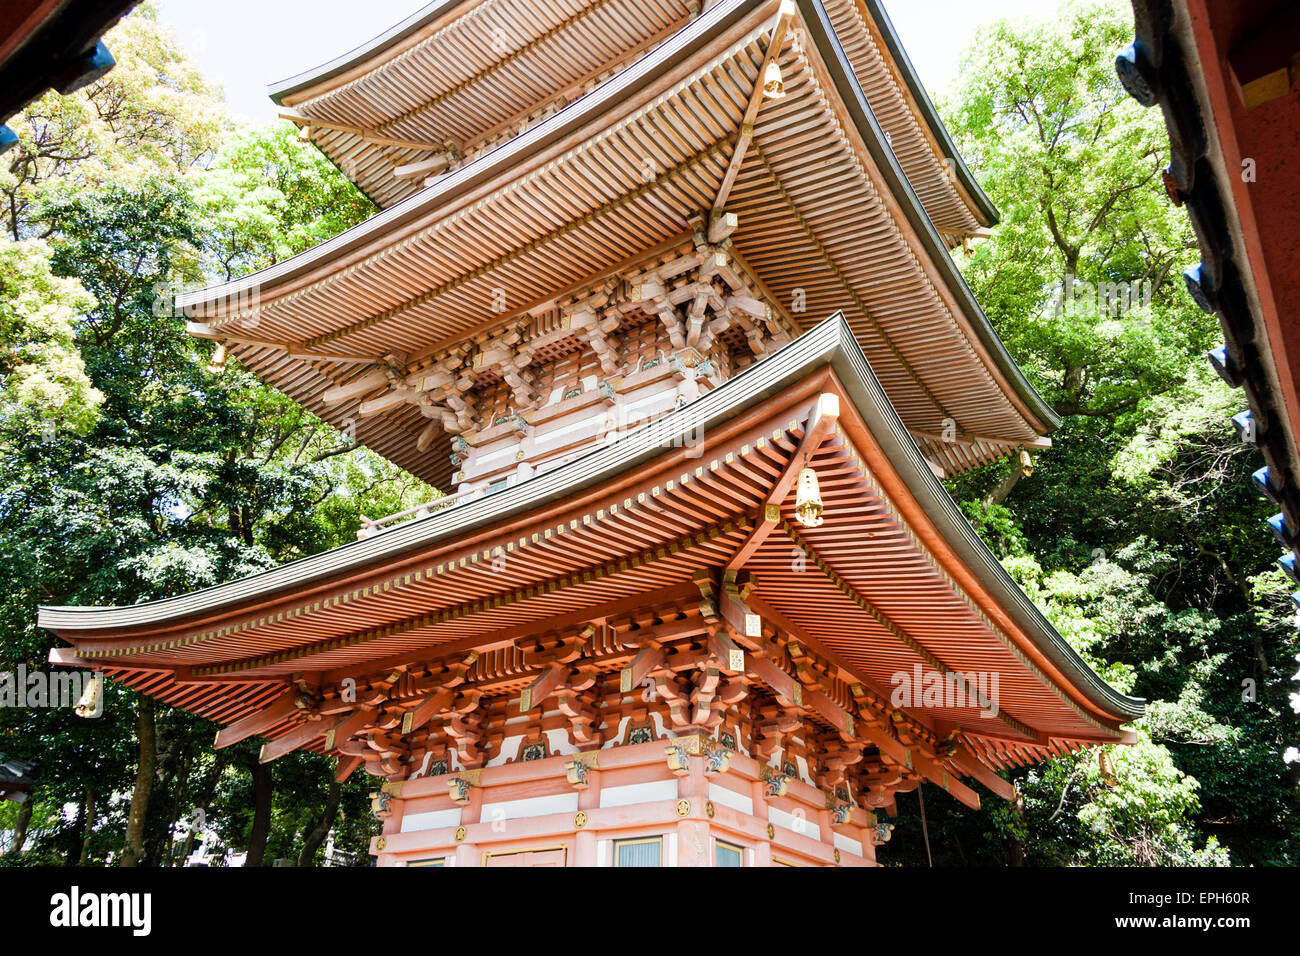 Tempio di Suma-dera a Suma in Giappone. Vista della pagoda del vermiglio che si erge sopra lo spettatore mostrando i dettagli delle navate ornate del tetto. Foto Stock